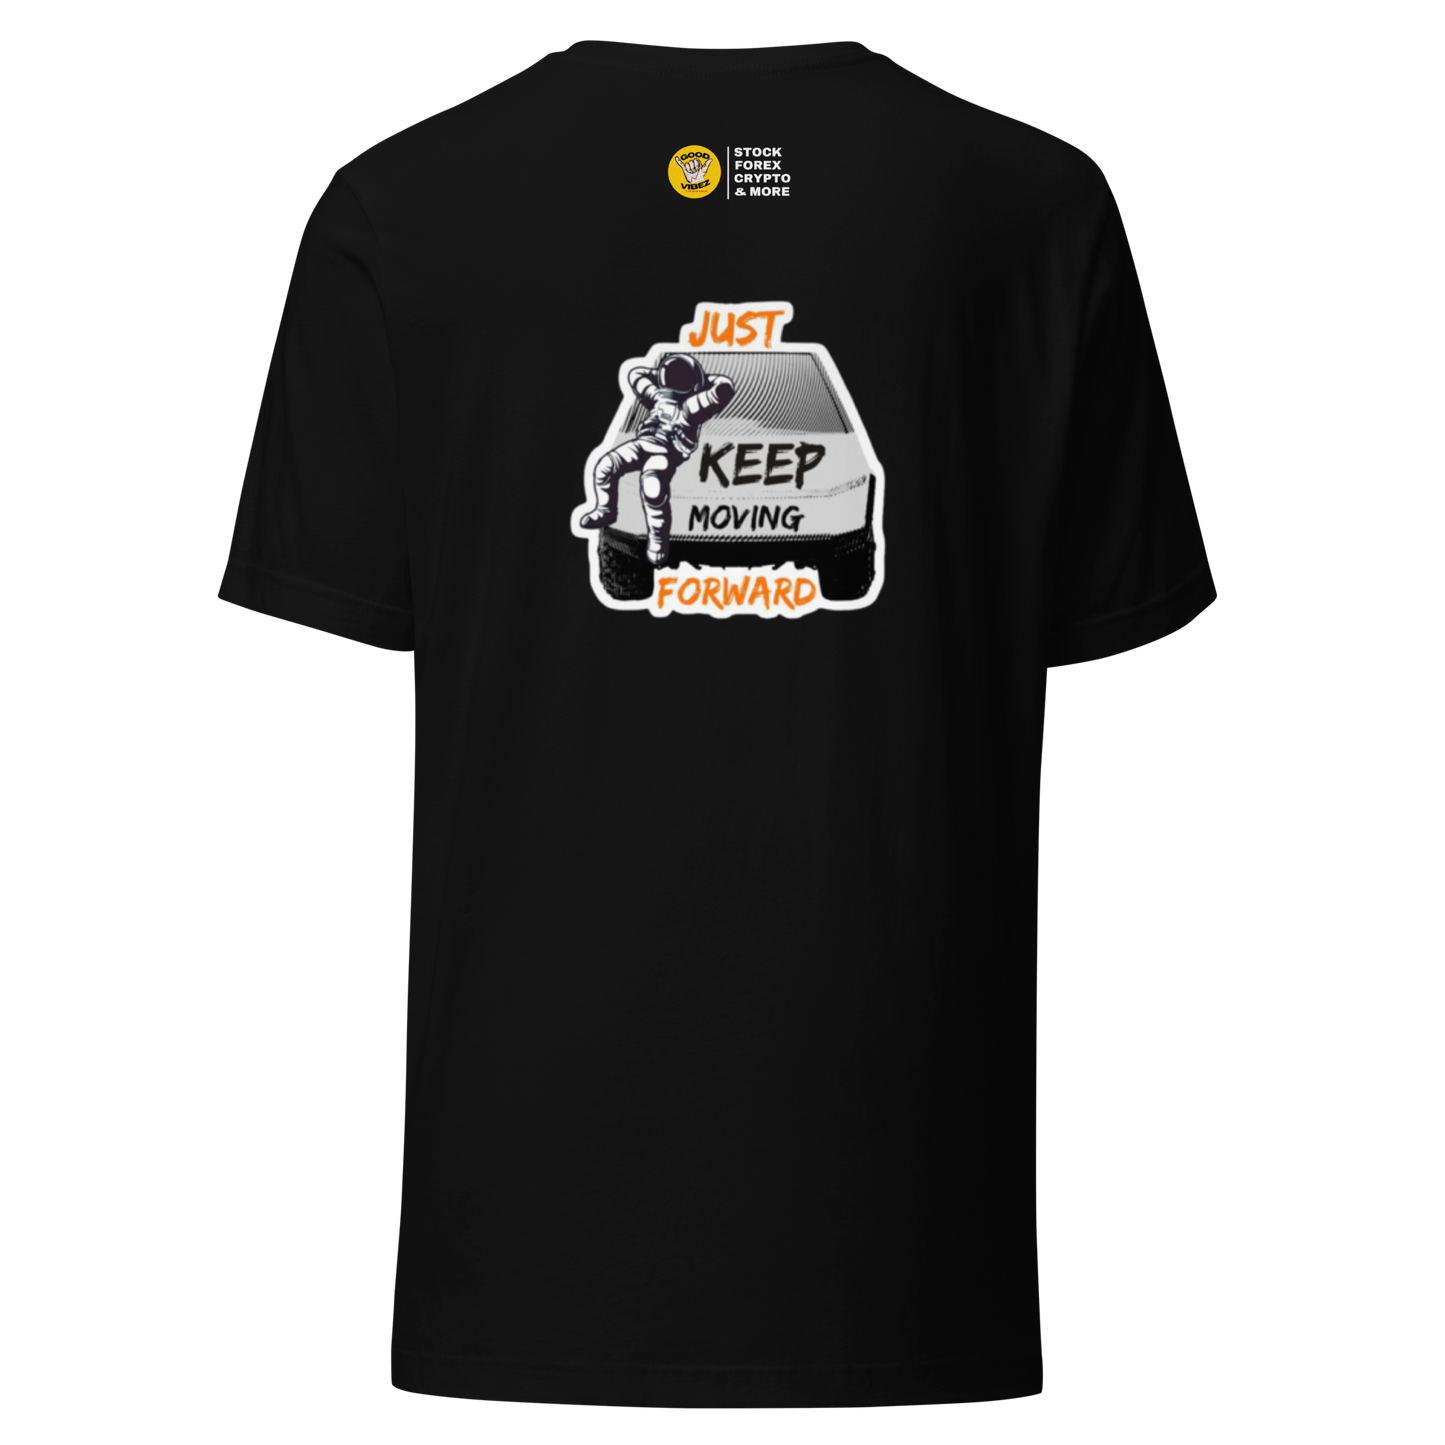 Cyber Truck Shirt 2